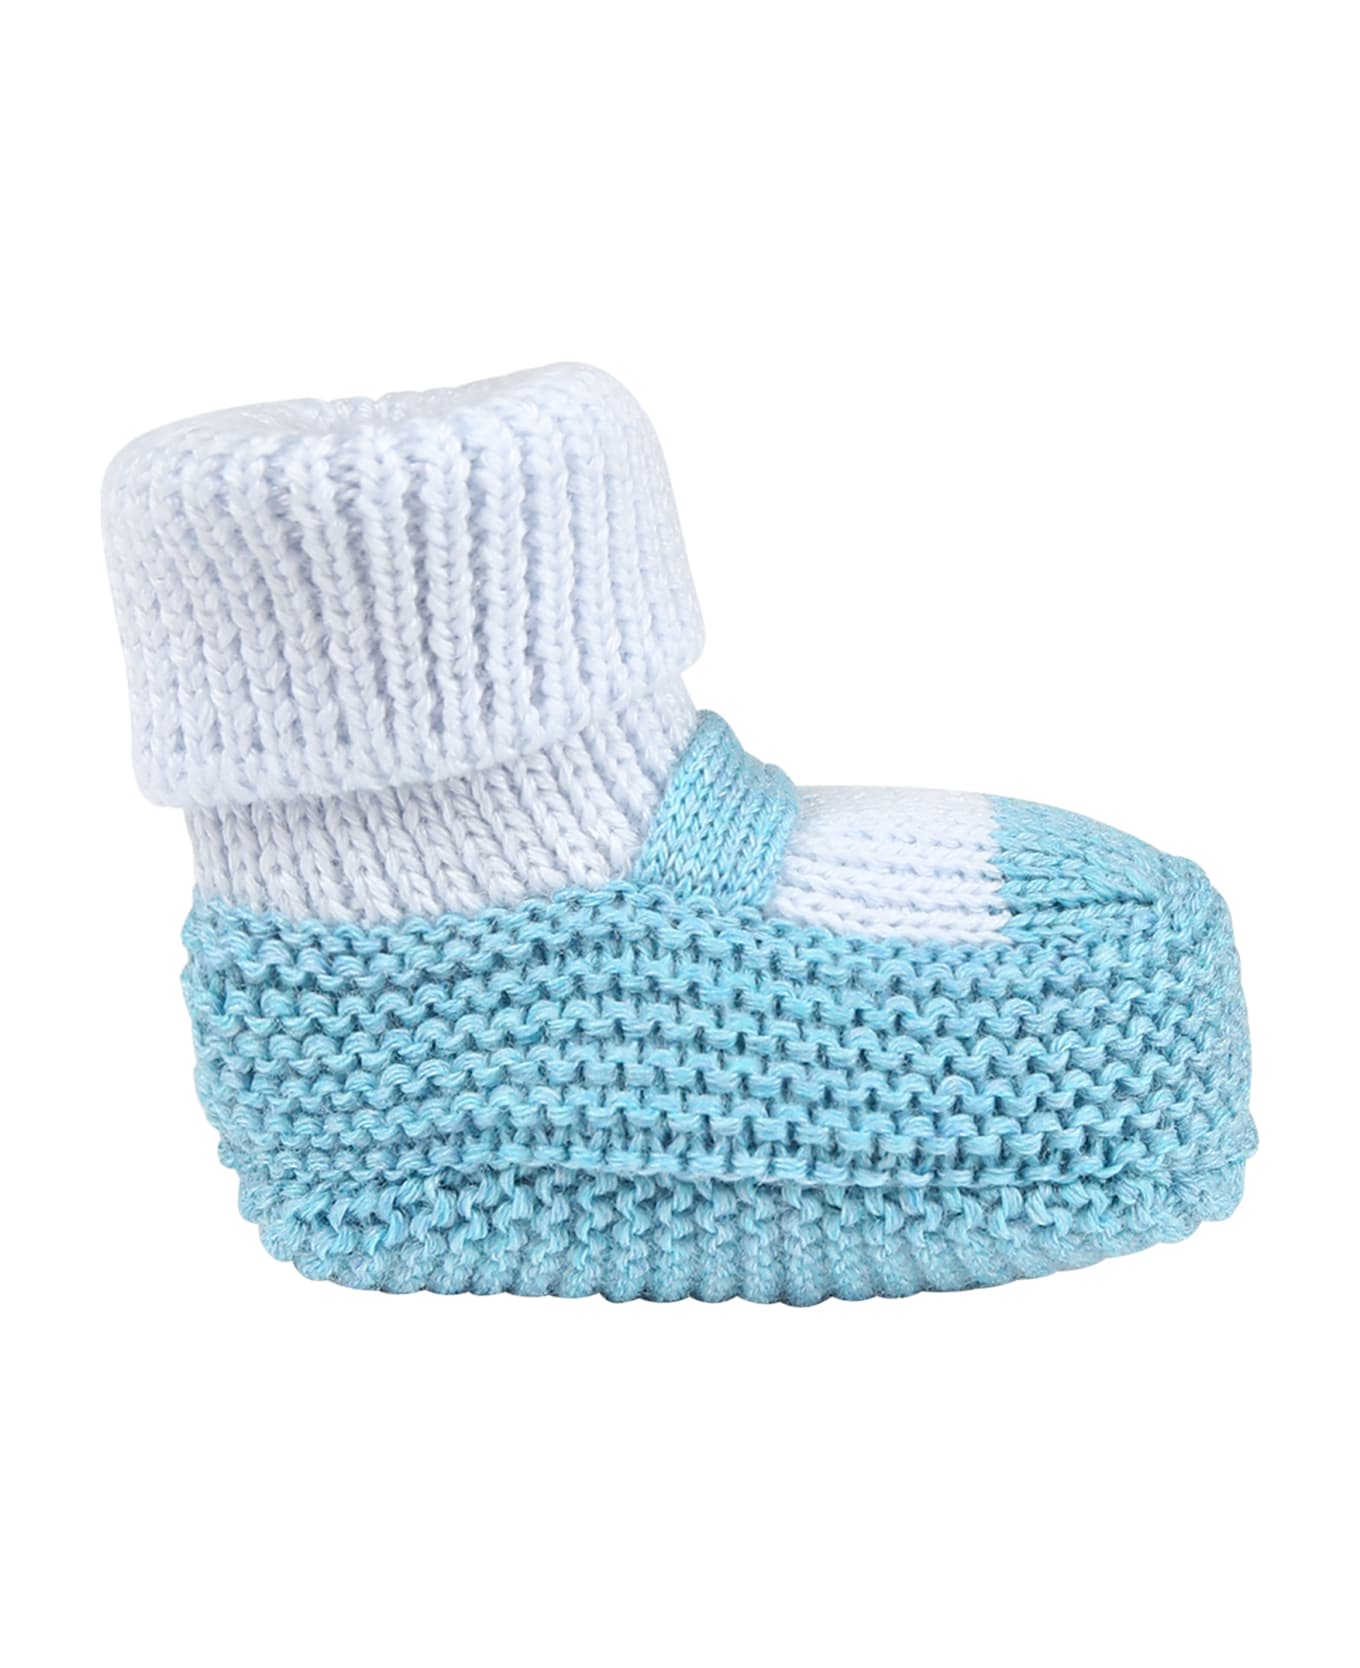 Little Bear Light Blue Slippers For Baby Boy - Multicolor